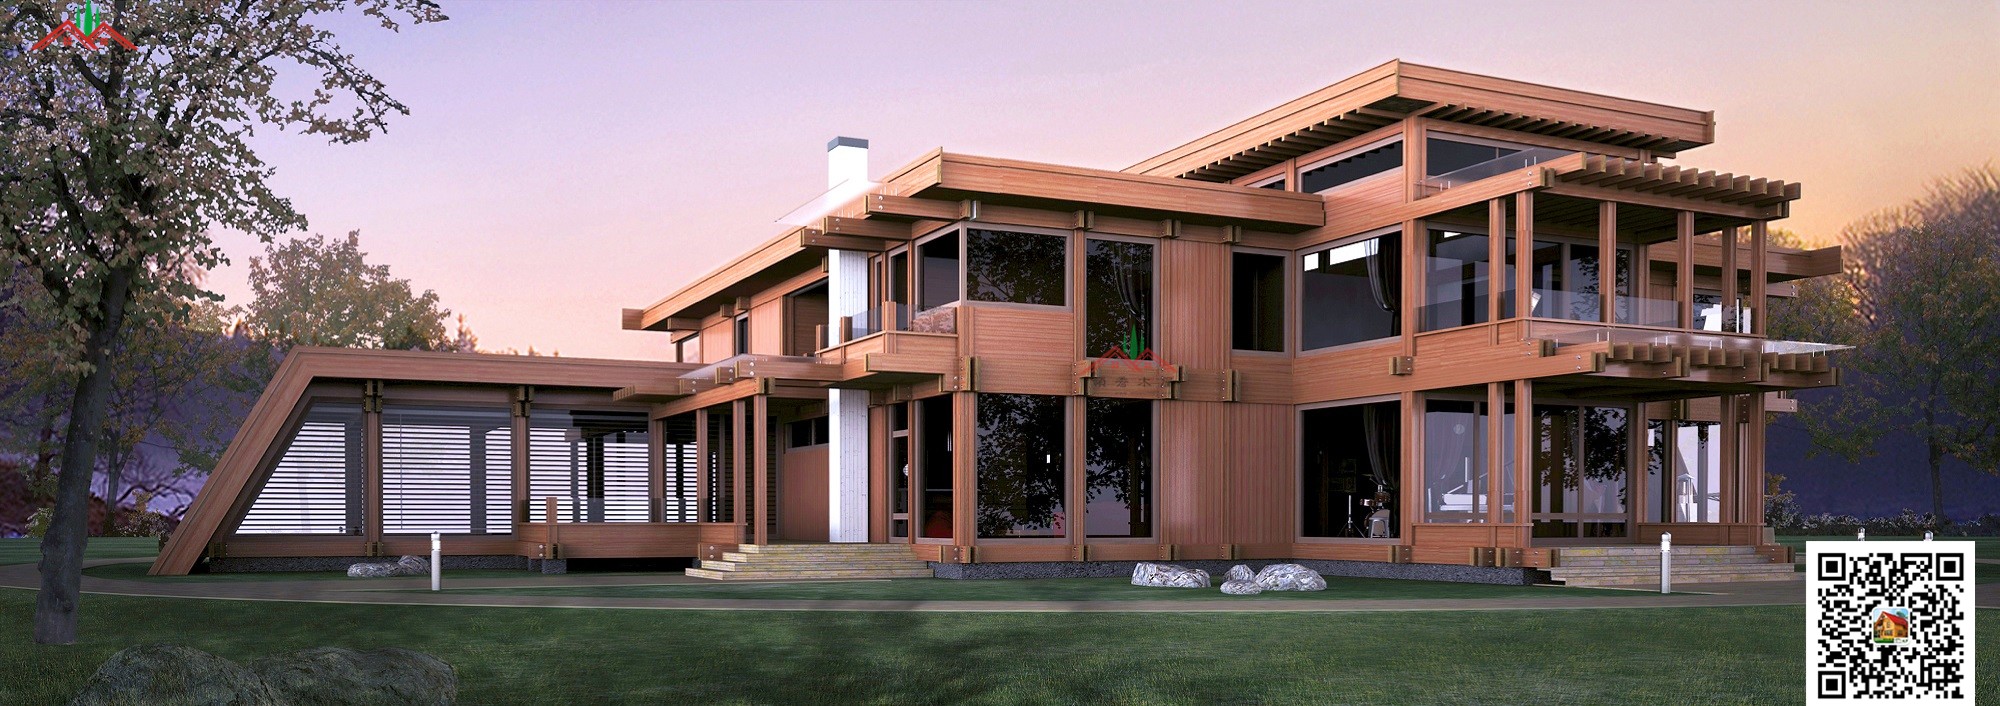 欧美现代风格梁柱结构木屋